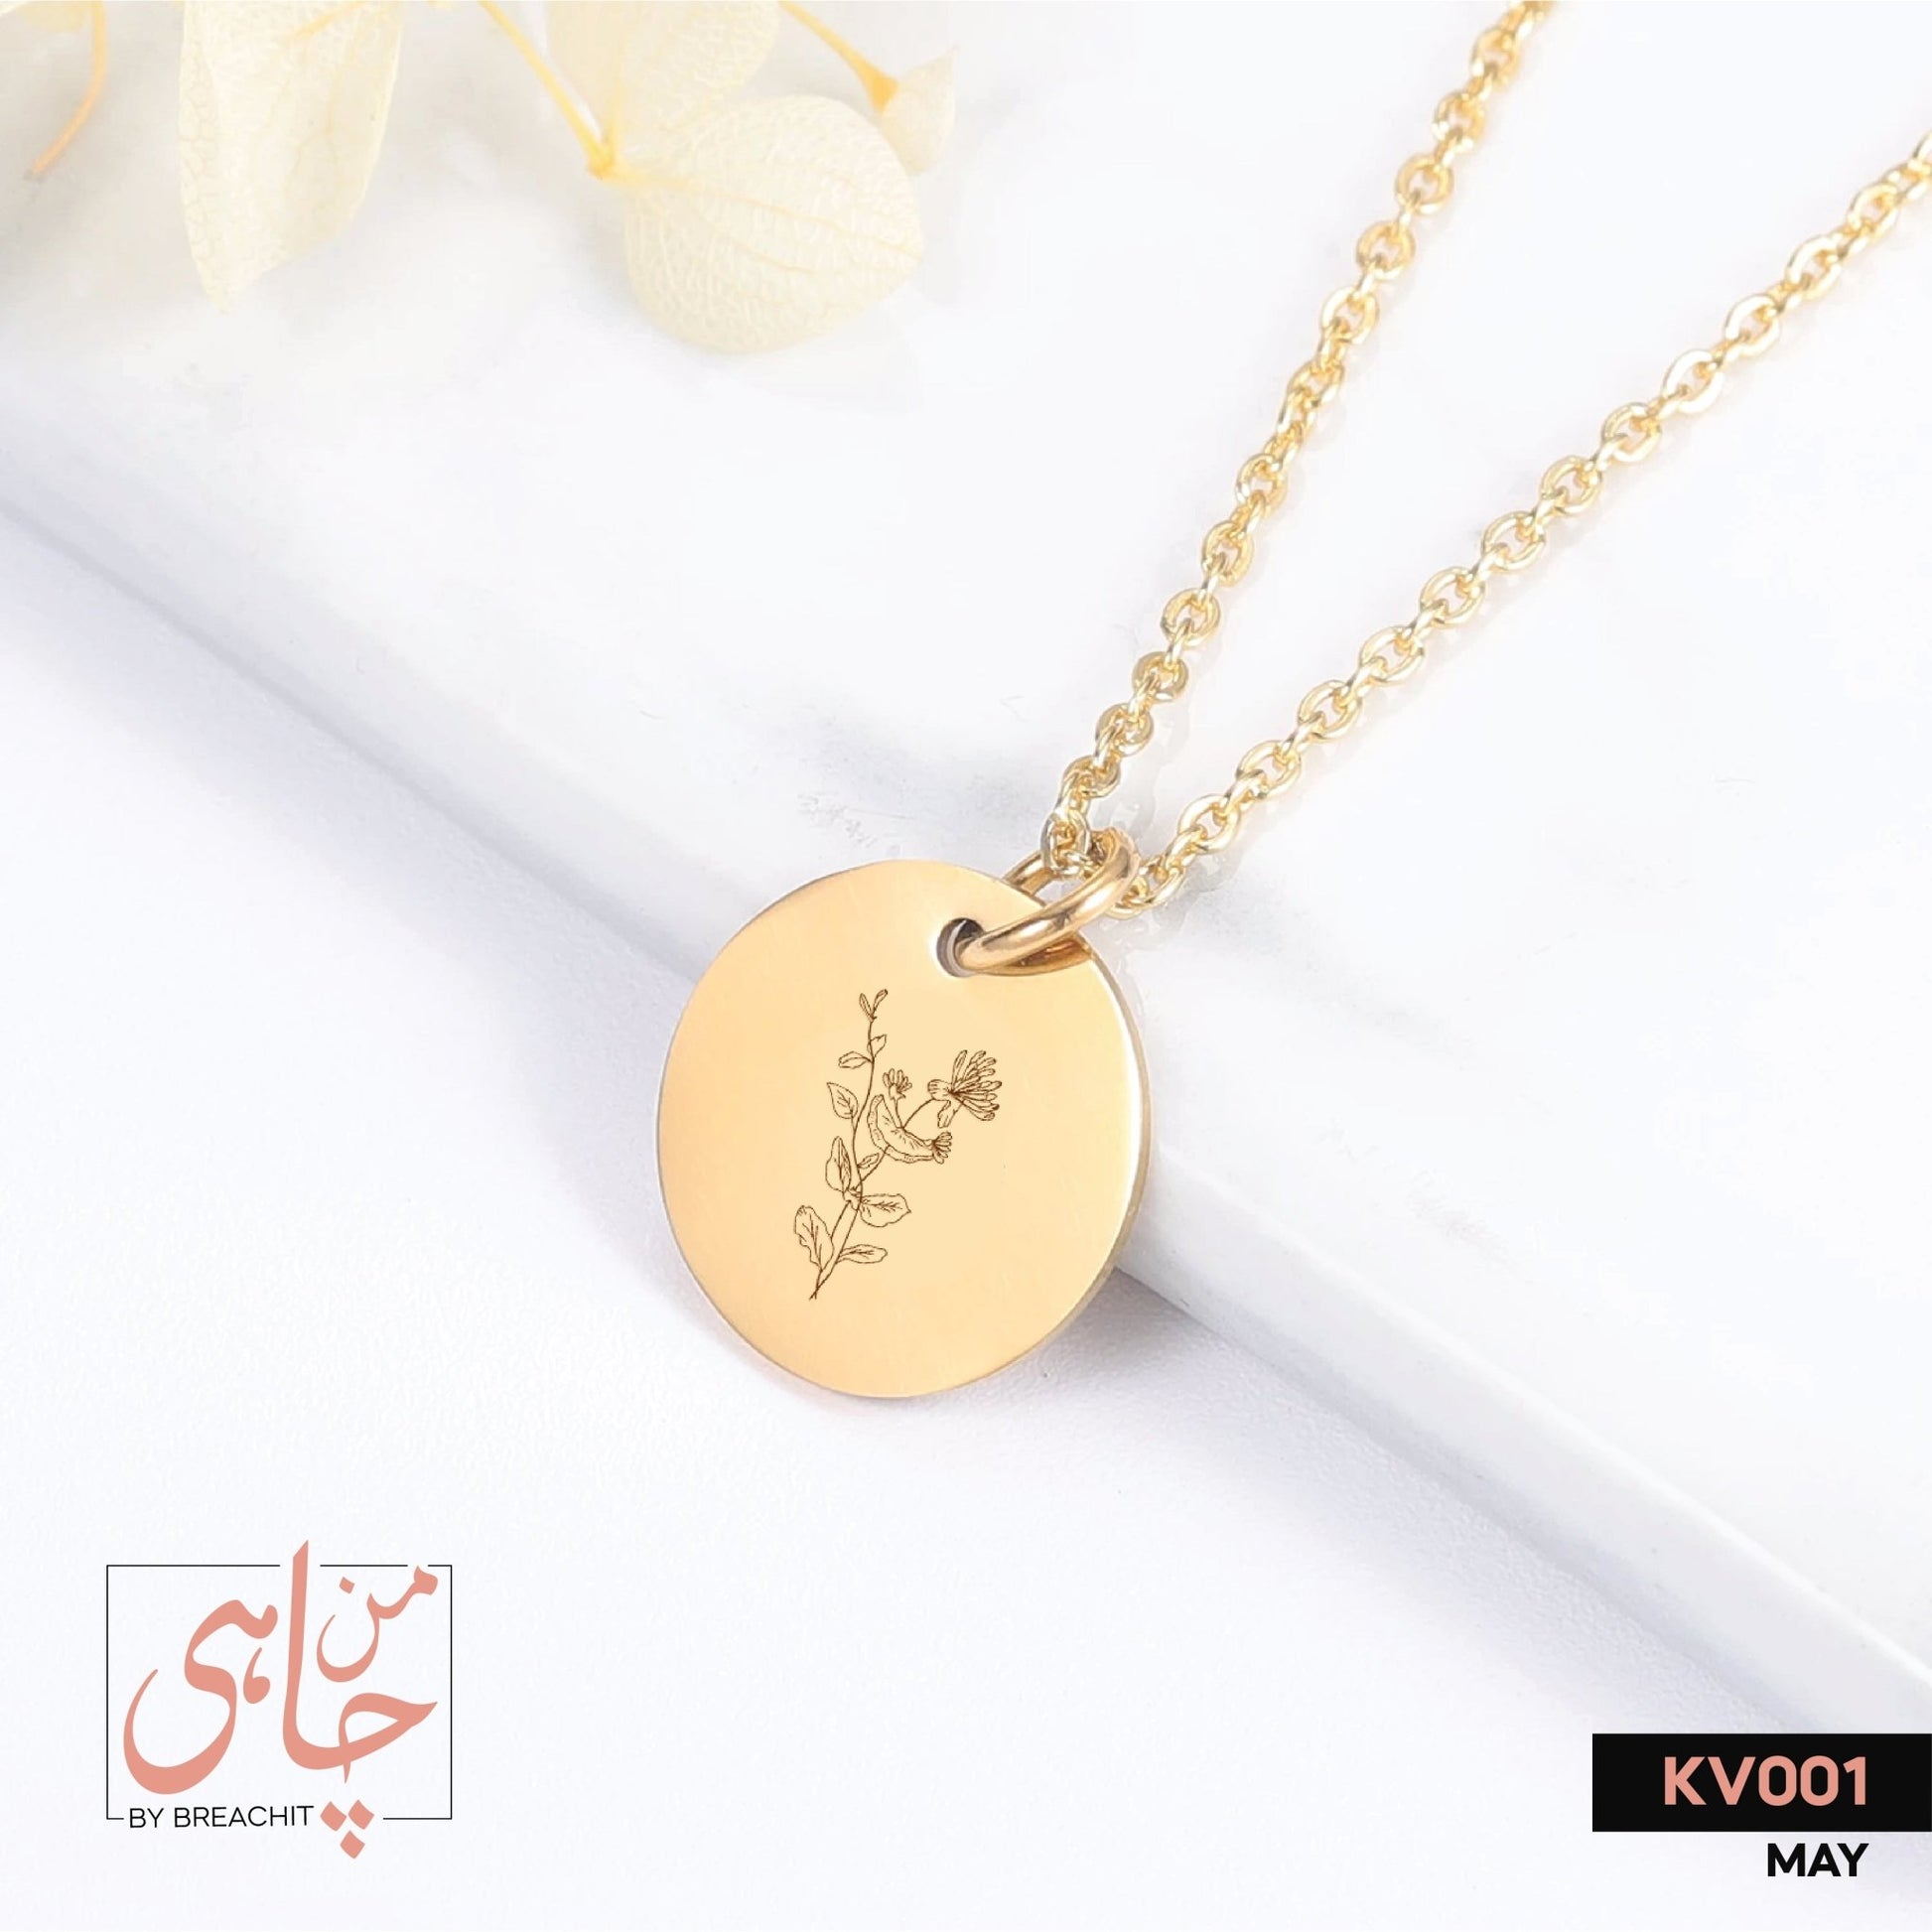 KV001 Birth Month Flower Necklace - BREACHIT